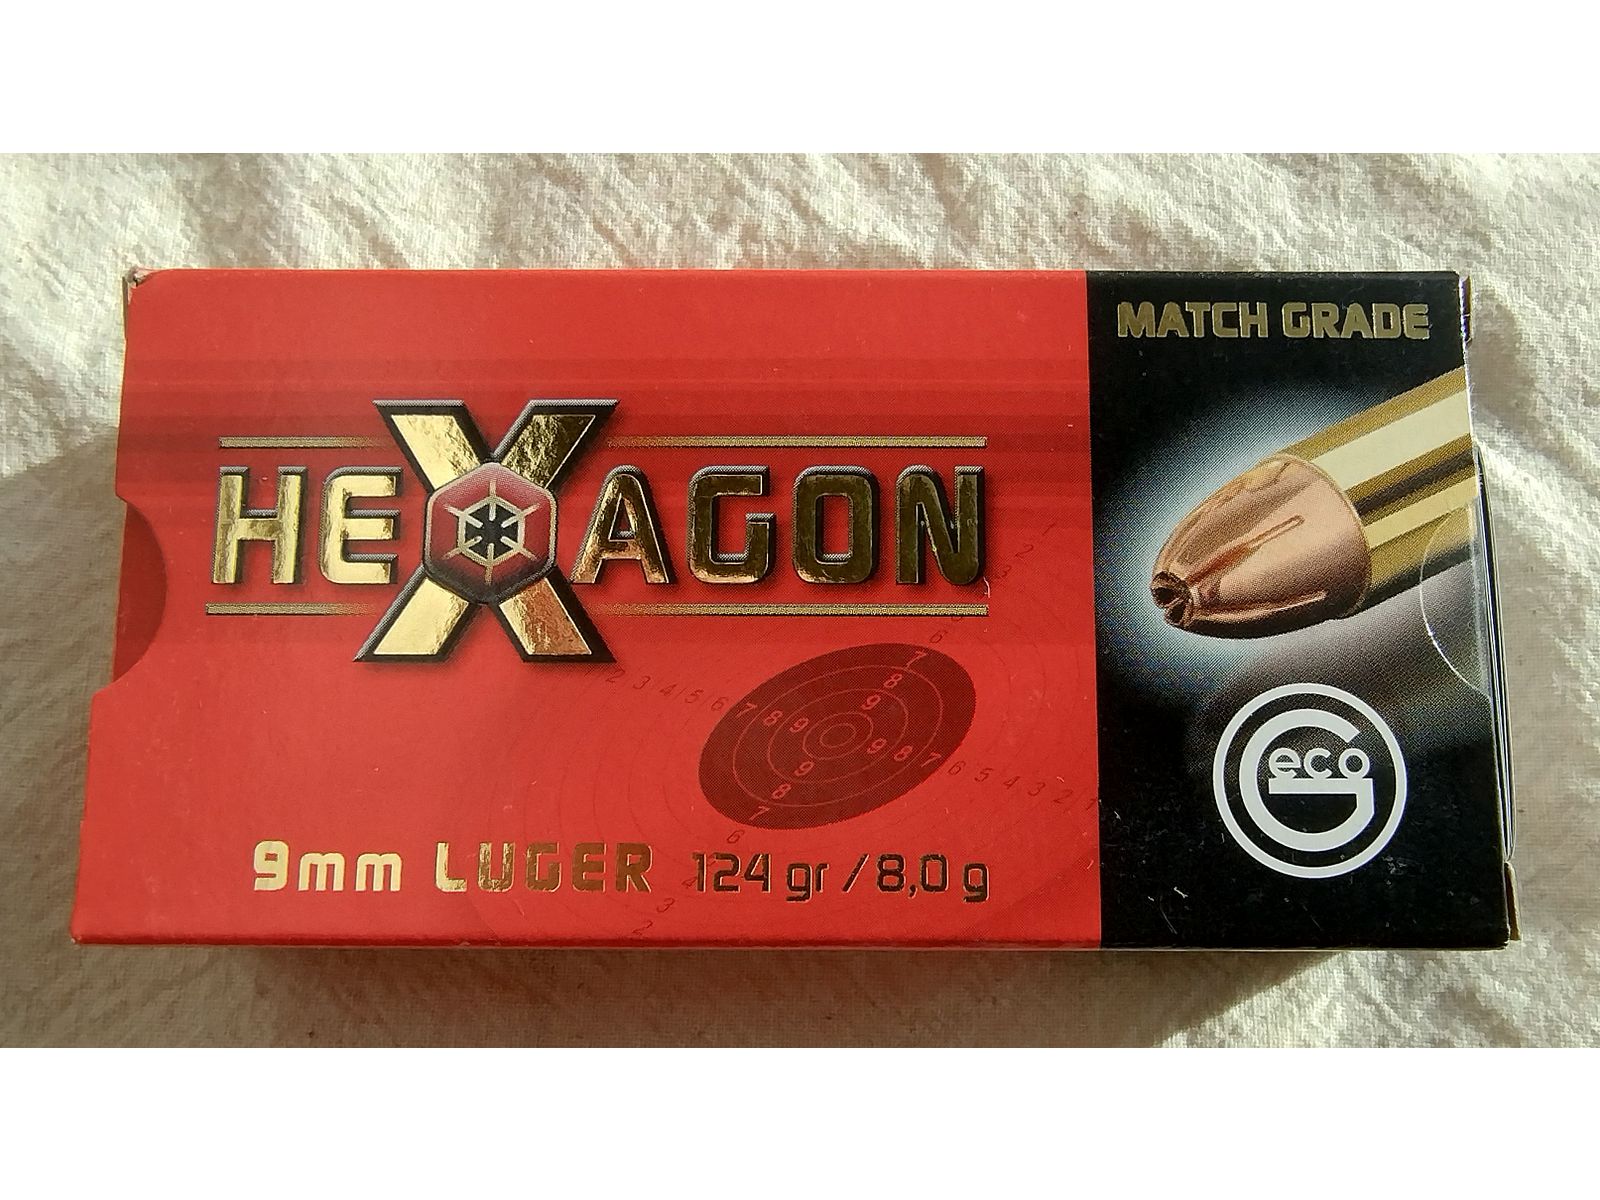 GECO HEXAGON 9mm Luger 124gr / 8,0g °°°°°°°°°°°°°°°°°